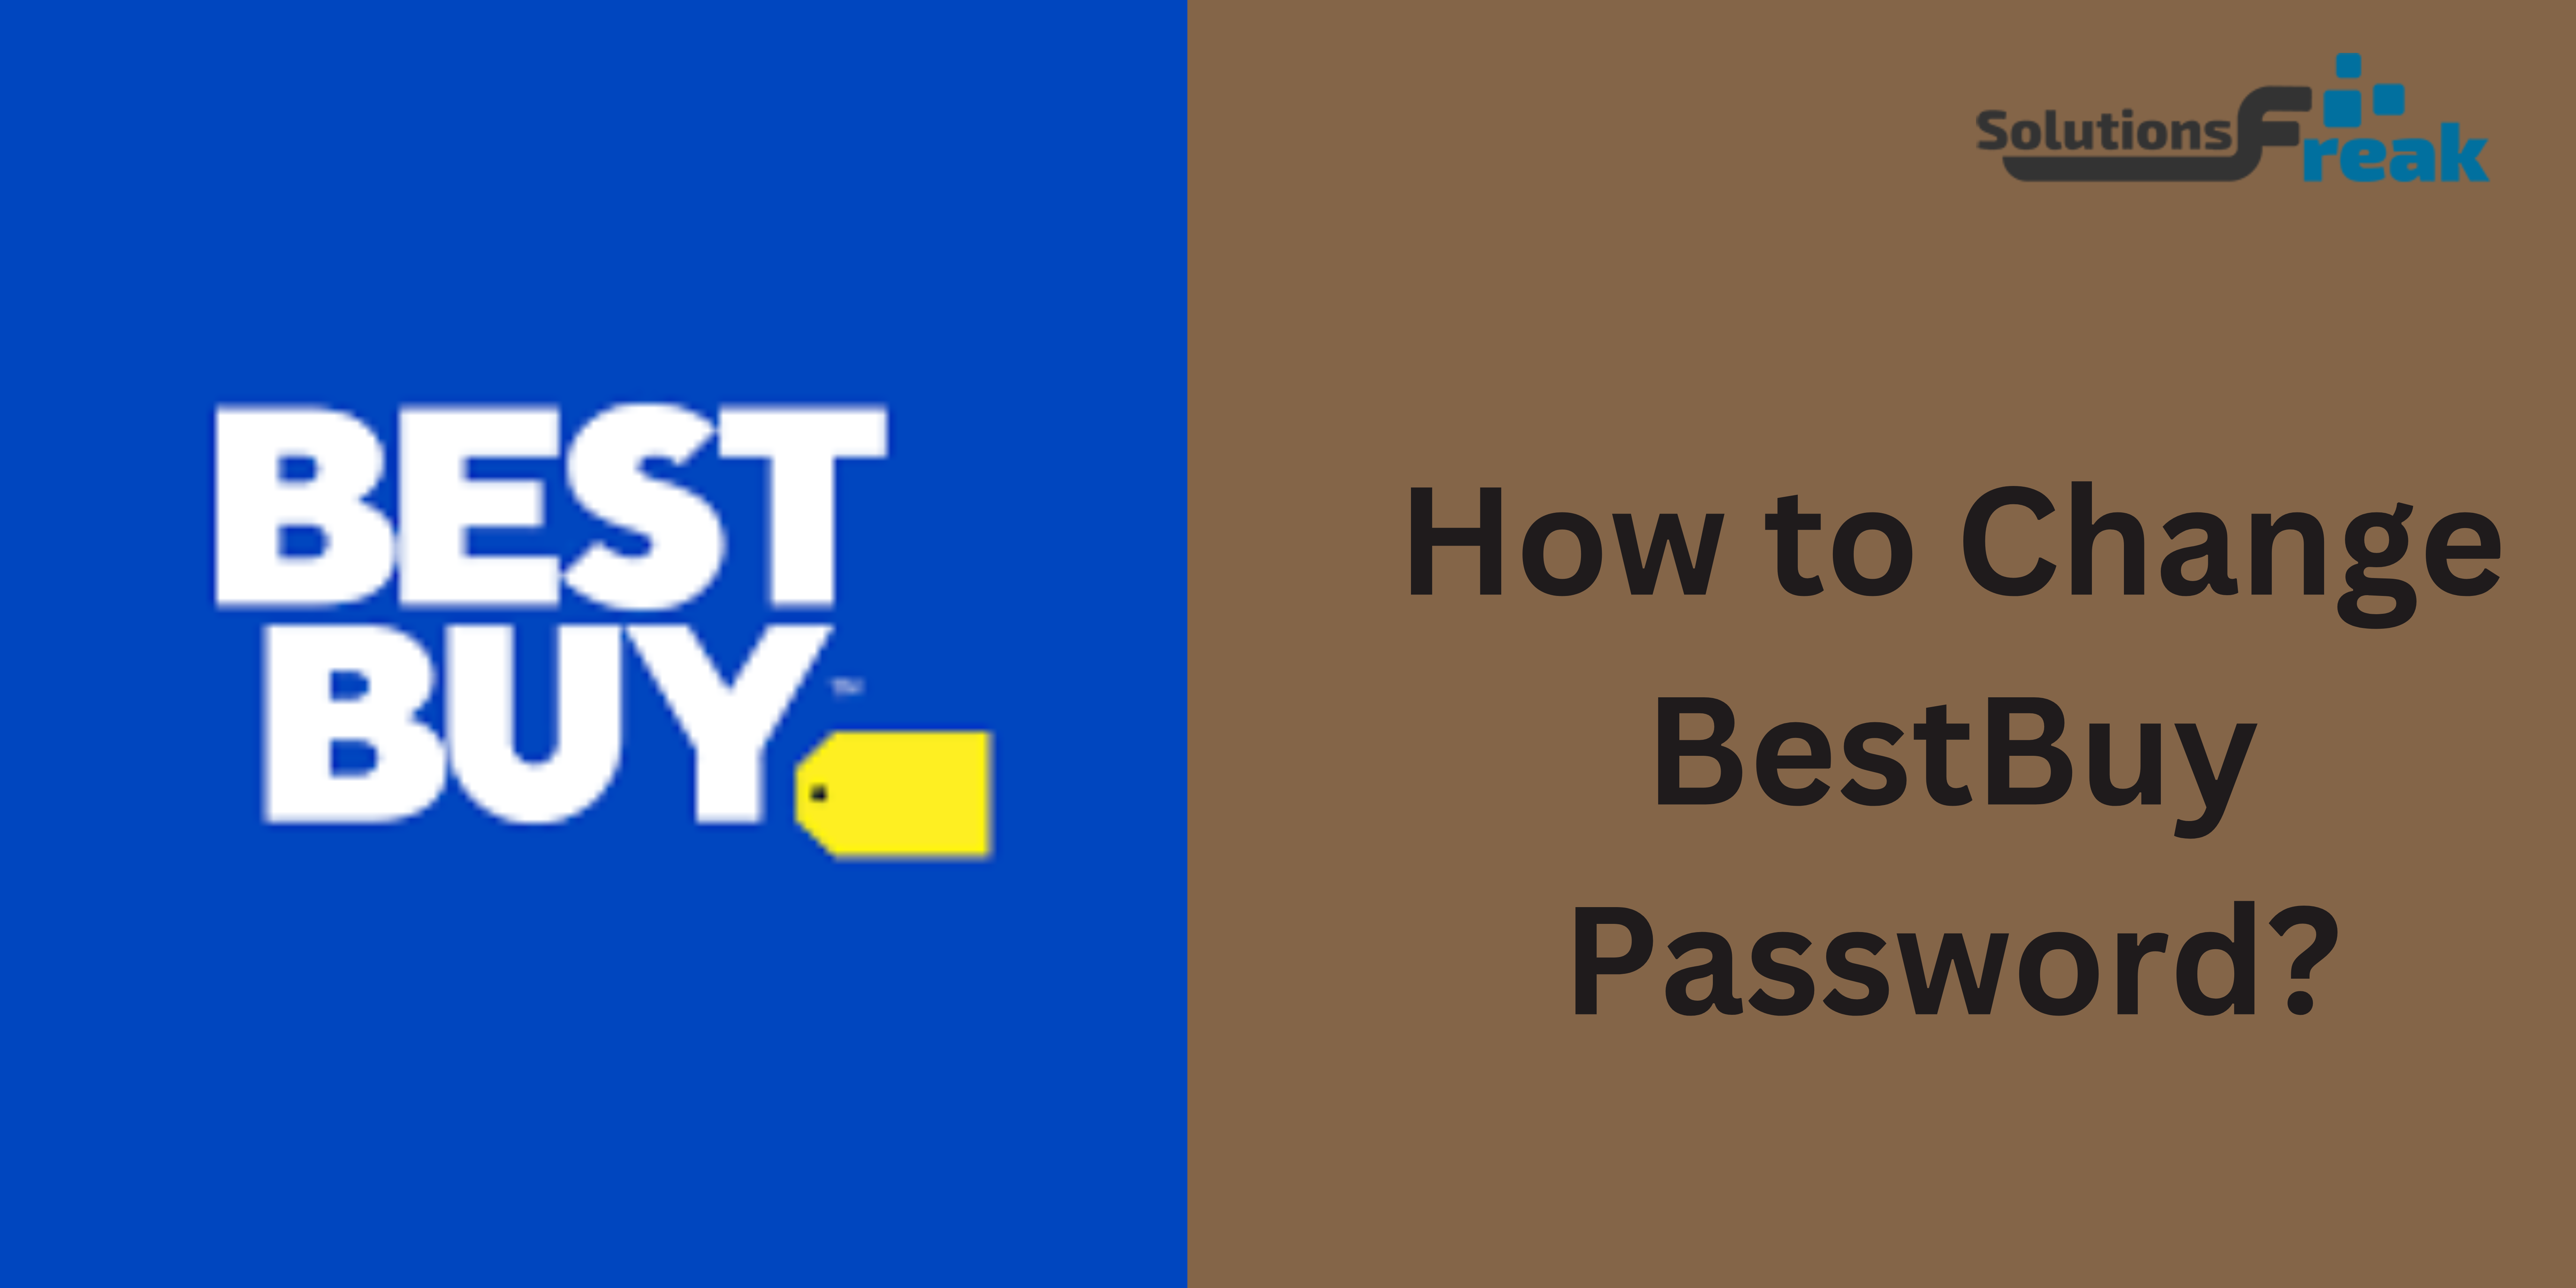 How to Change BestBuy Password